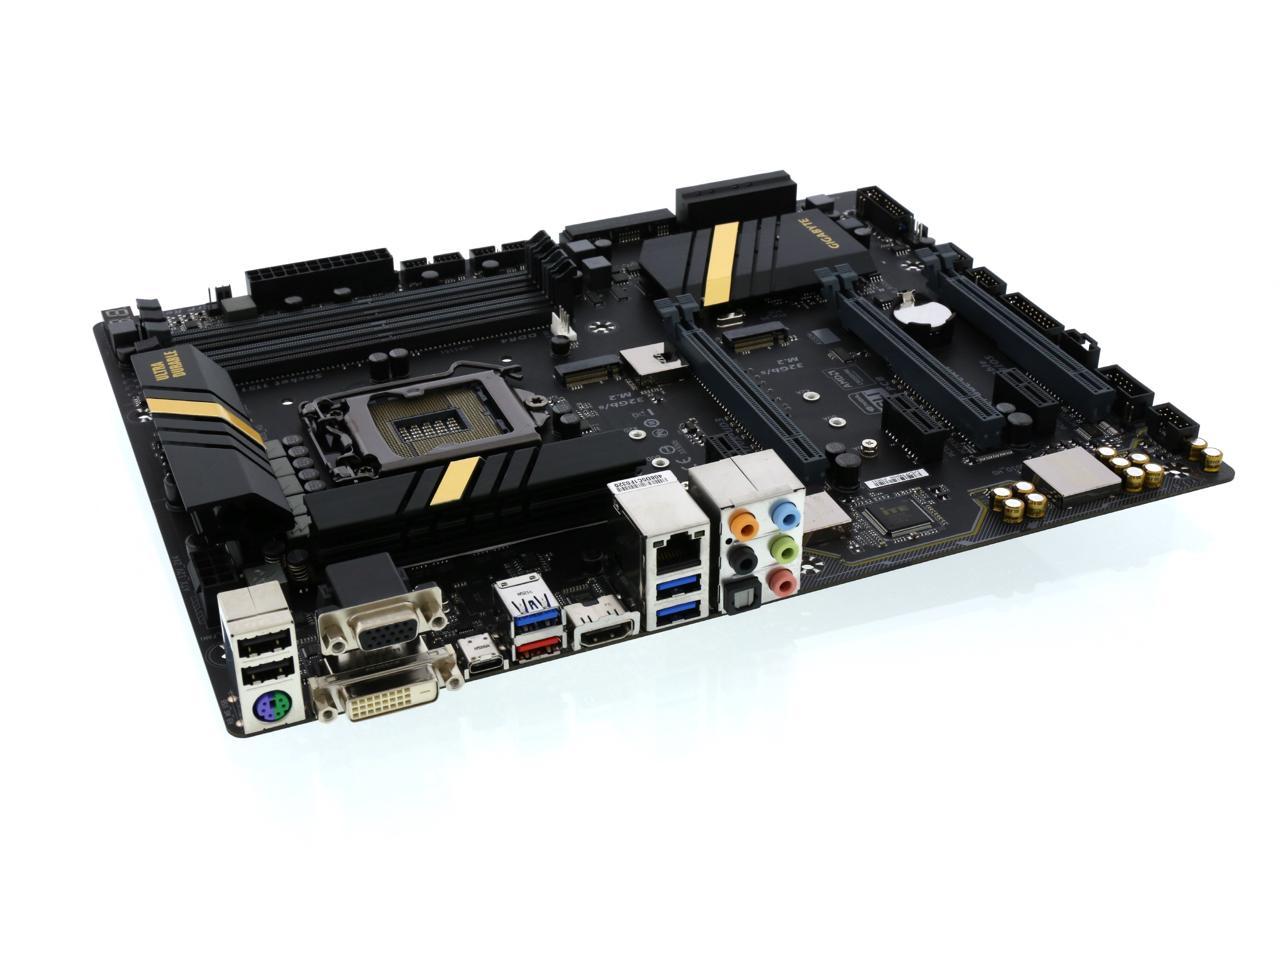 GIGABYTE Intel Z170チップセット搭載 ATX マザーボードGA-Z170X-UD3